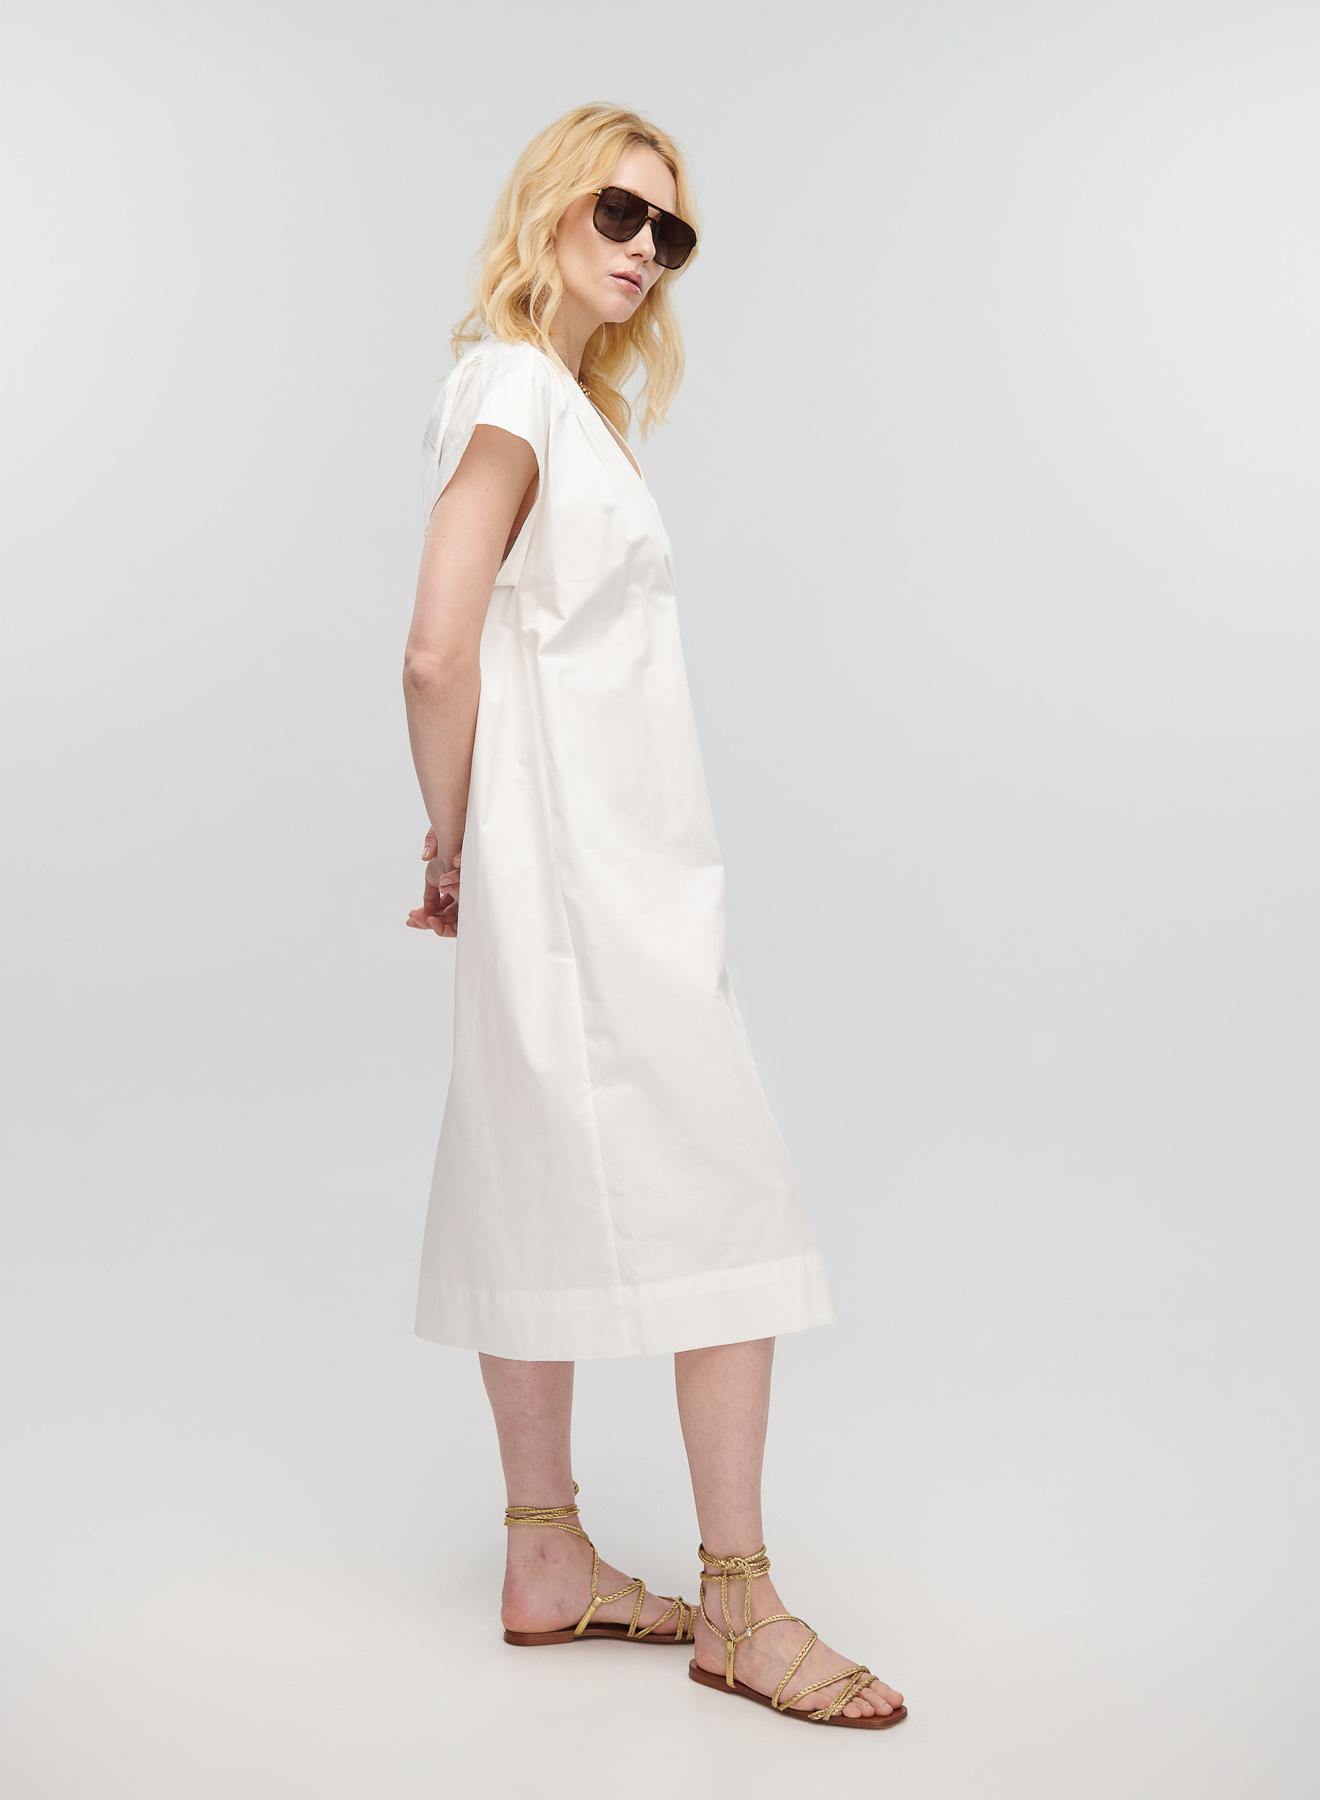 Λευκό μακρύ Φόρεμα αμάνικο με V λαιμόκοψη, ζώνη και σχισμή μπροστά Milla - 2